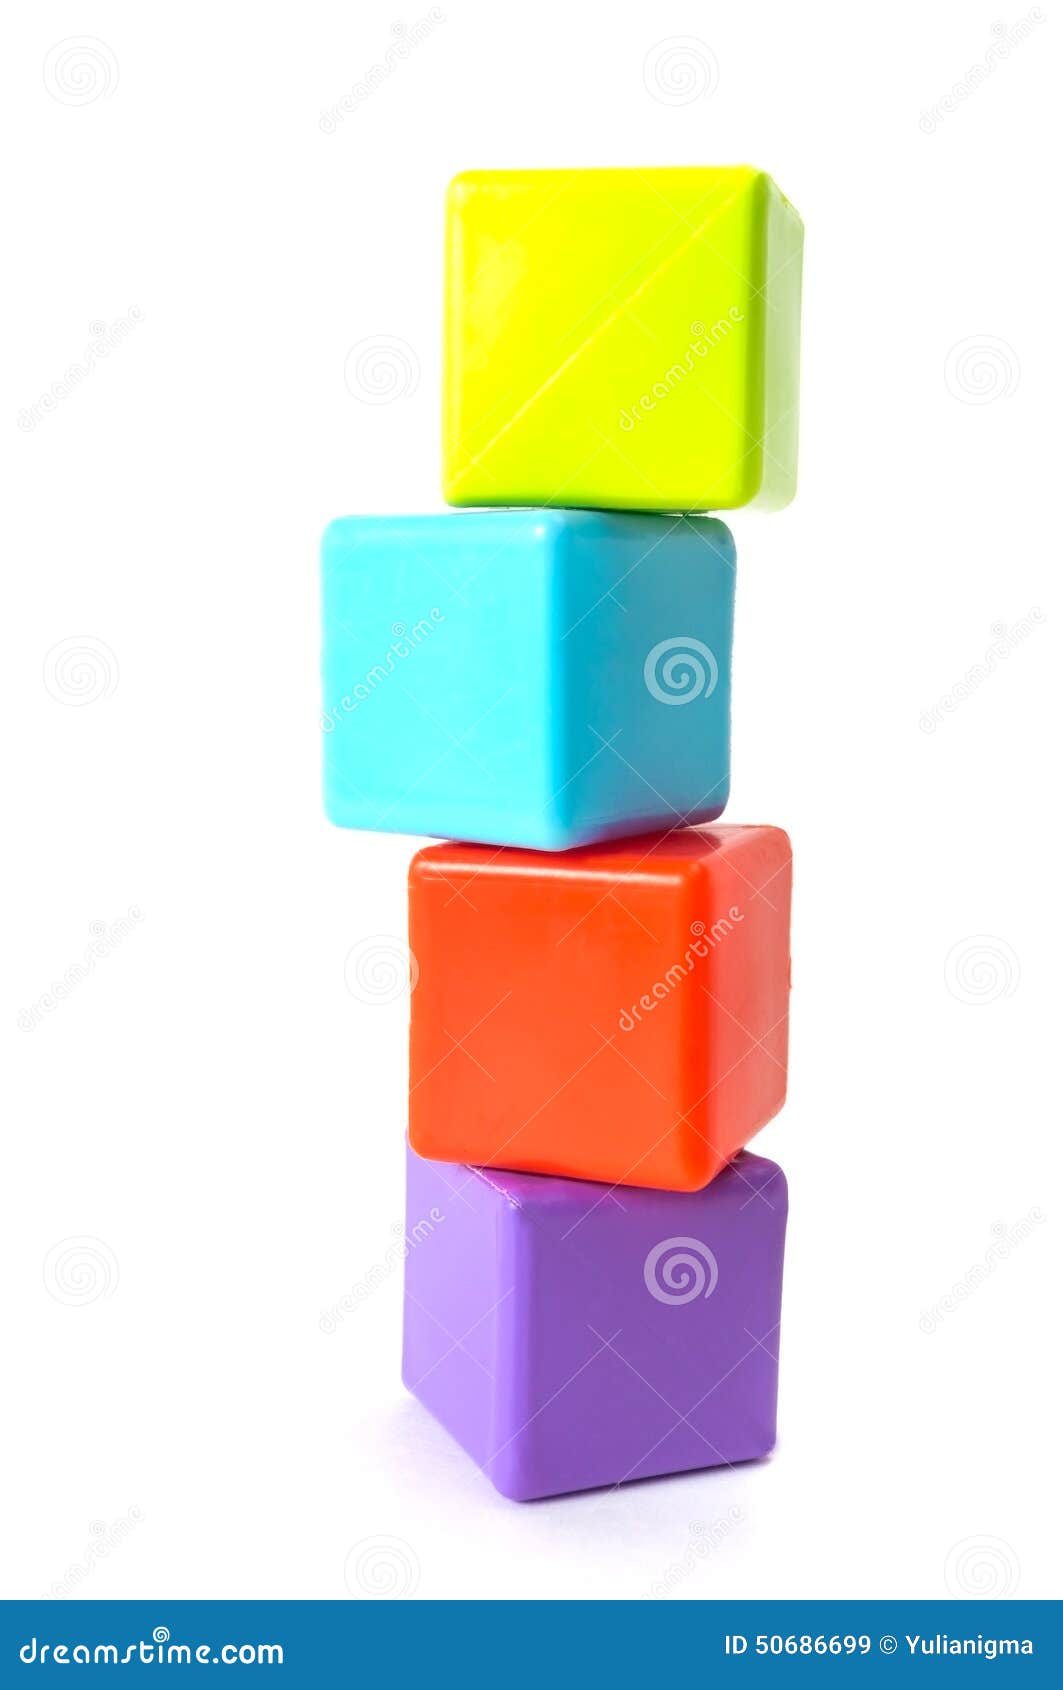 Torre de cubos apilados imagen de archivo. Imagen de cubo - 50686699